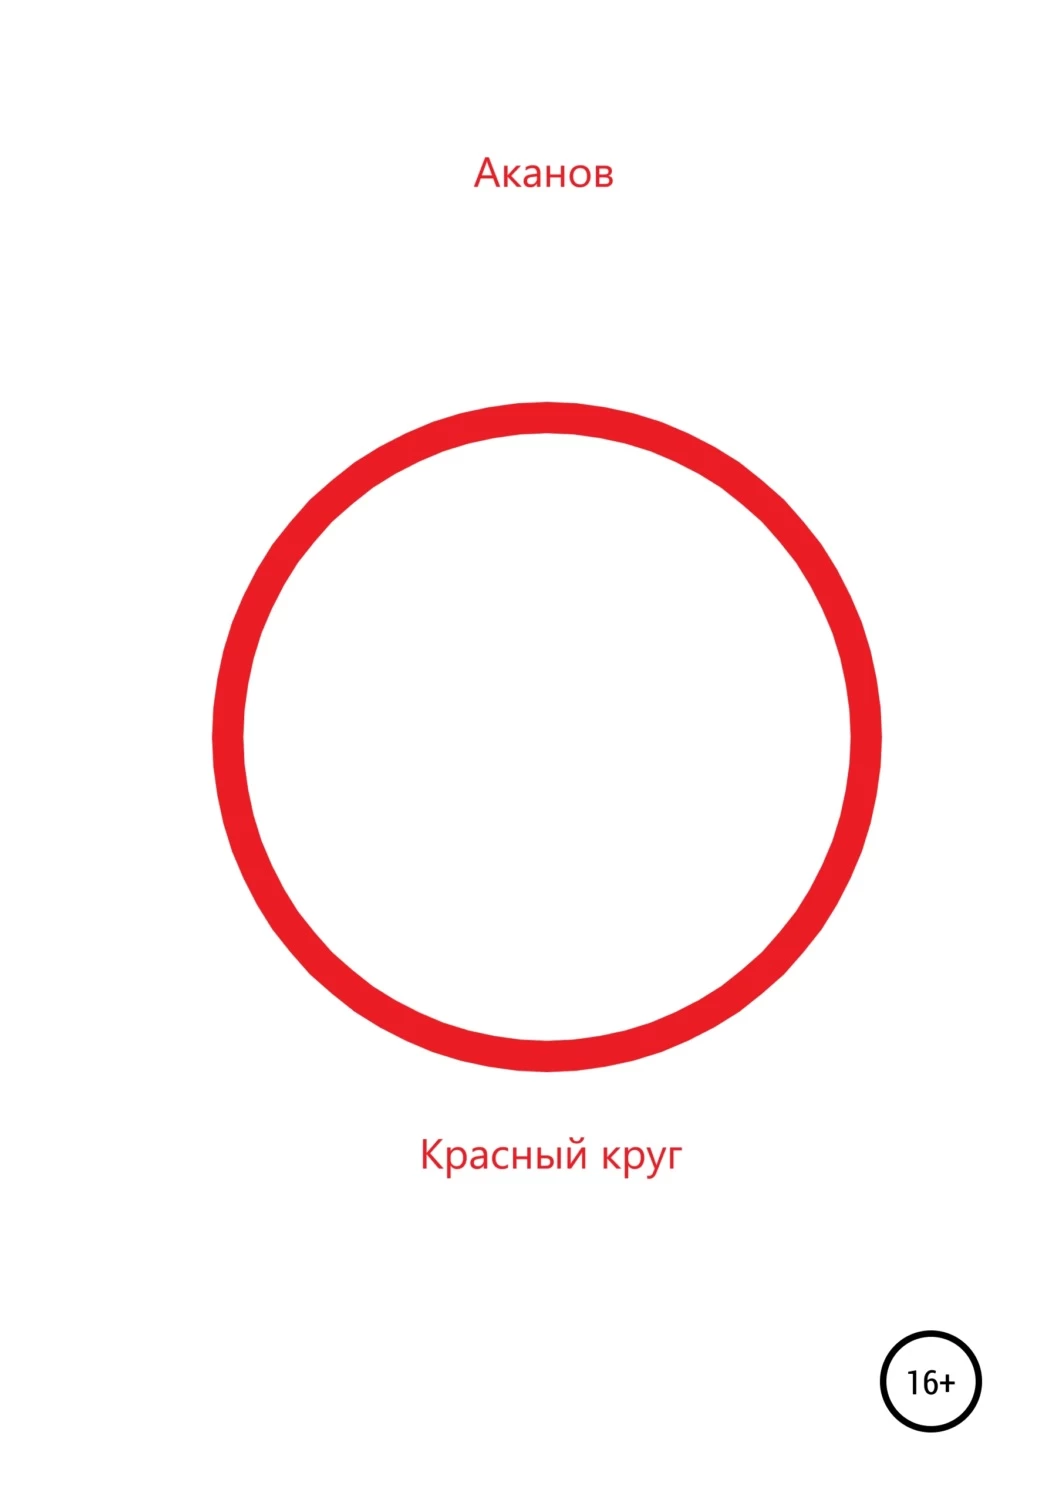 Круг писатели. Автор книги красный круг. Читать круг. Чтение по кругу.